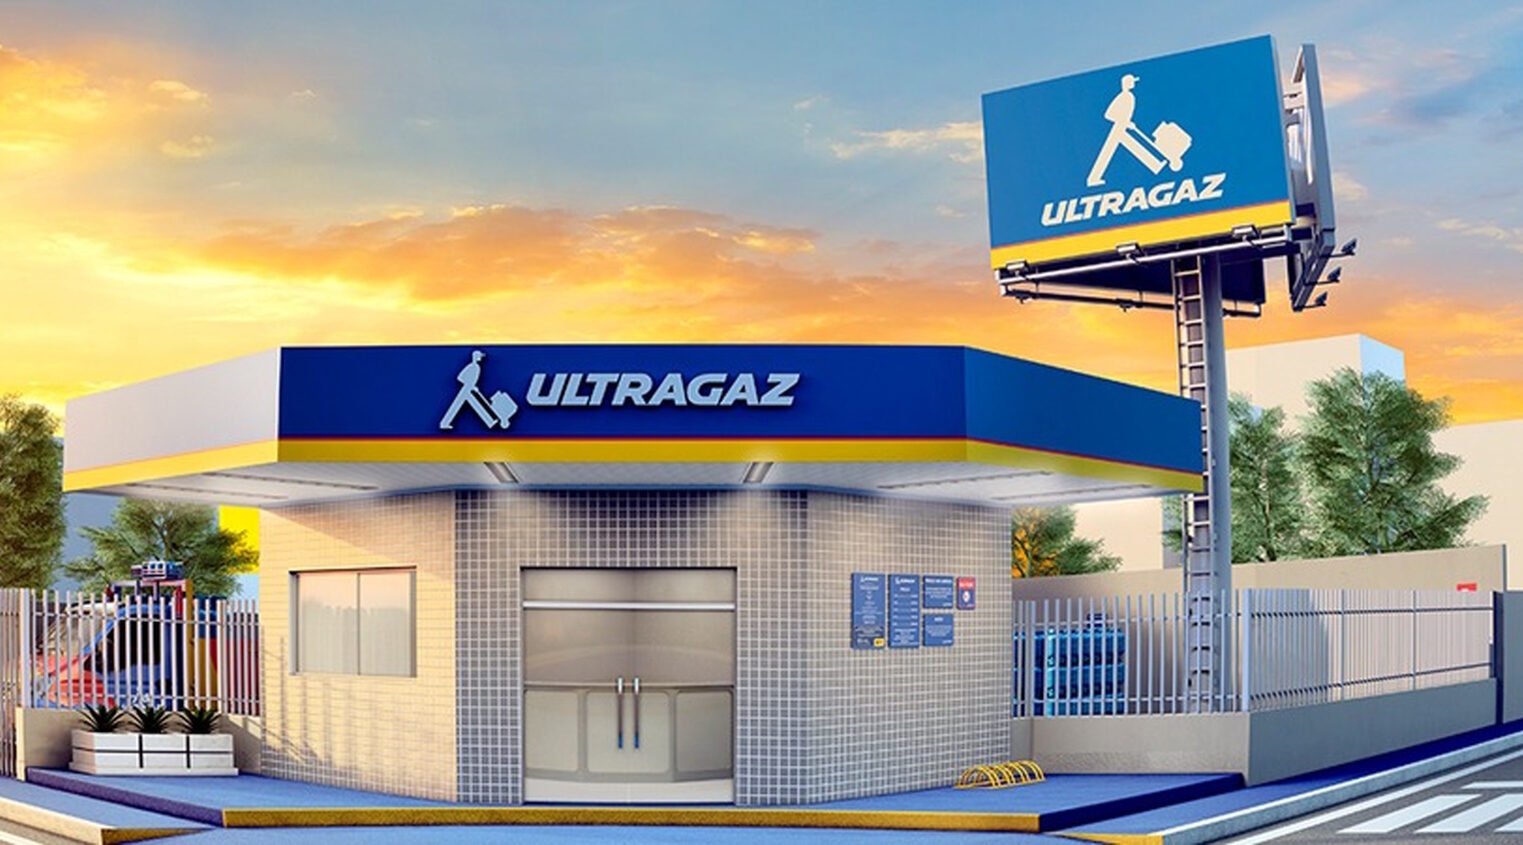 Ultragaz acaba de abrir nova vaga para Auxiliar de Logística